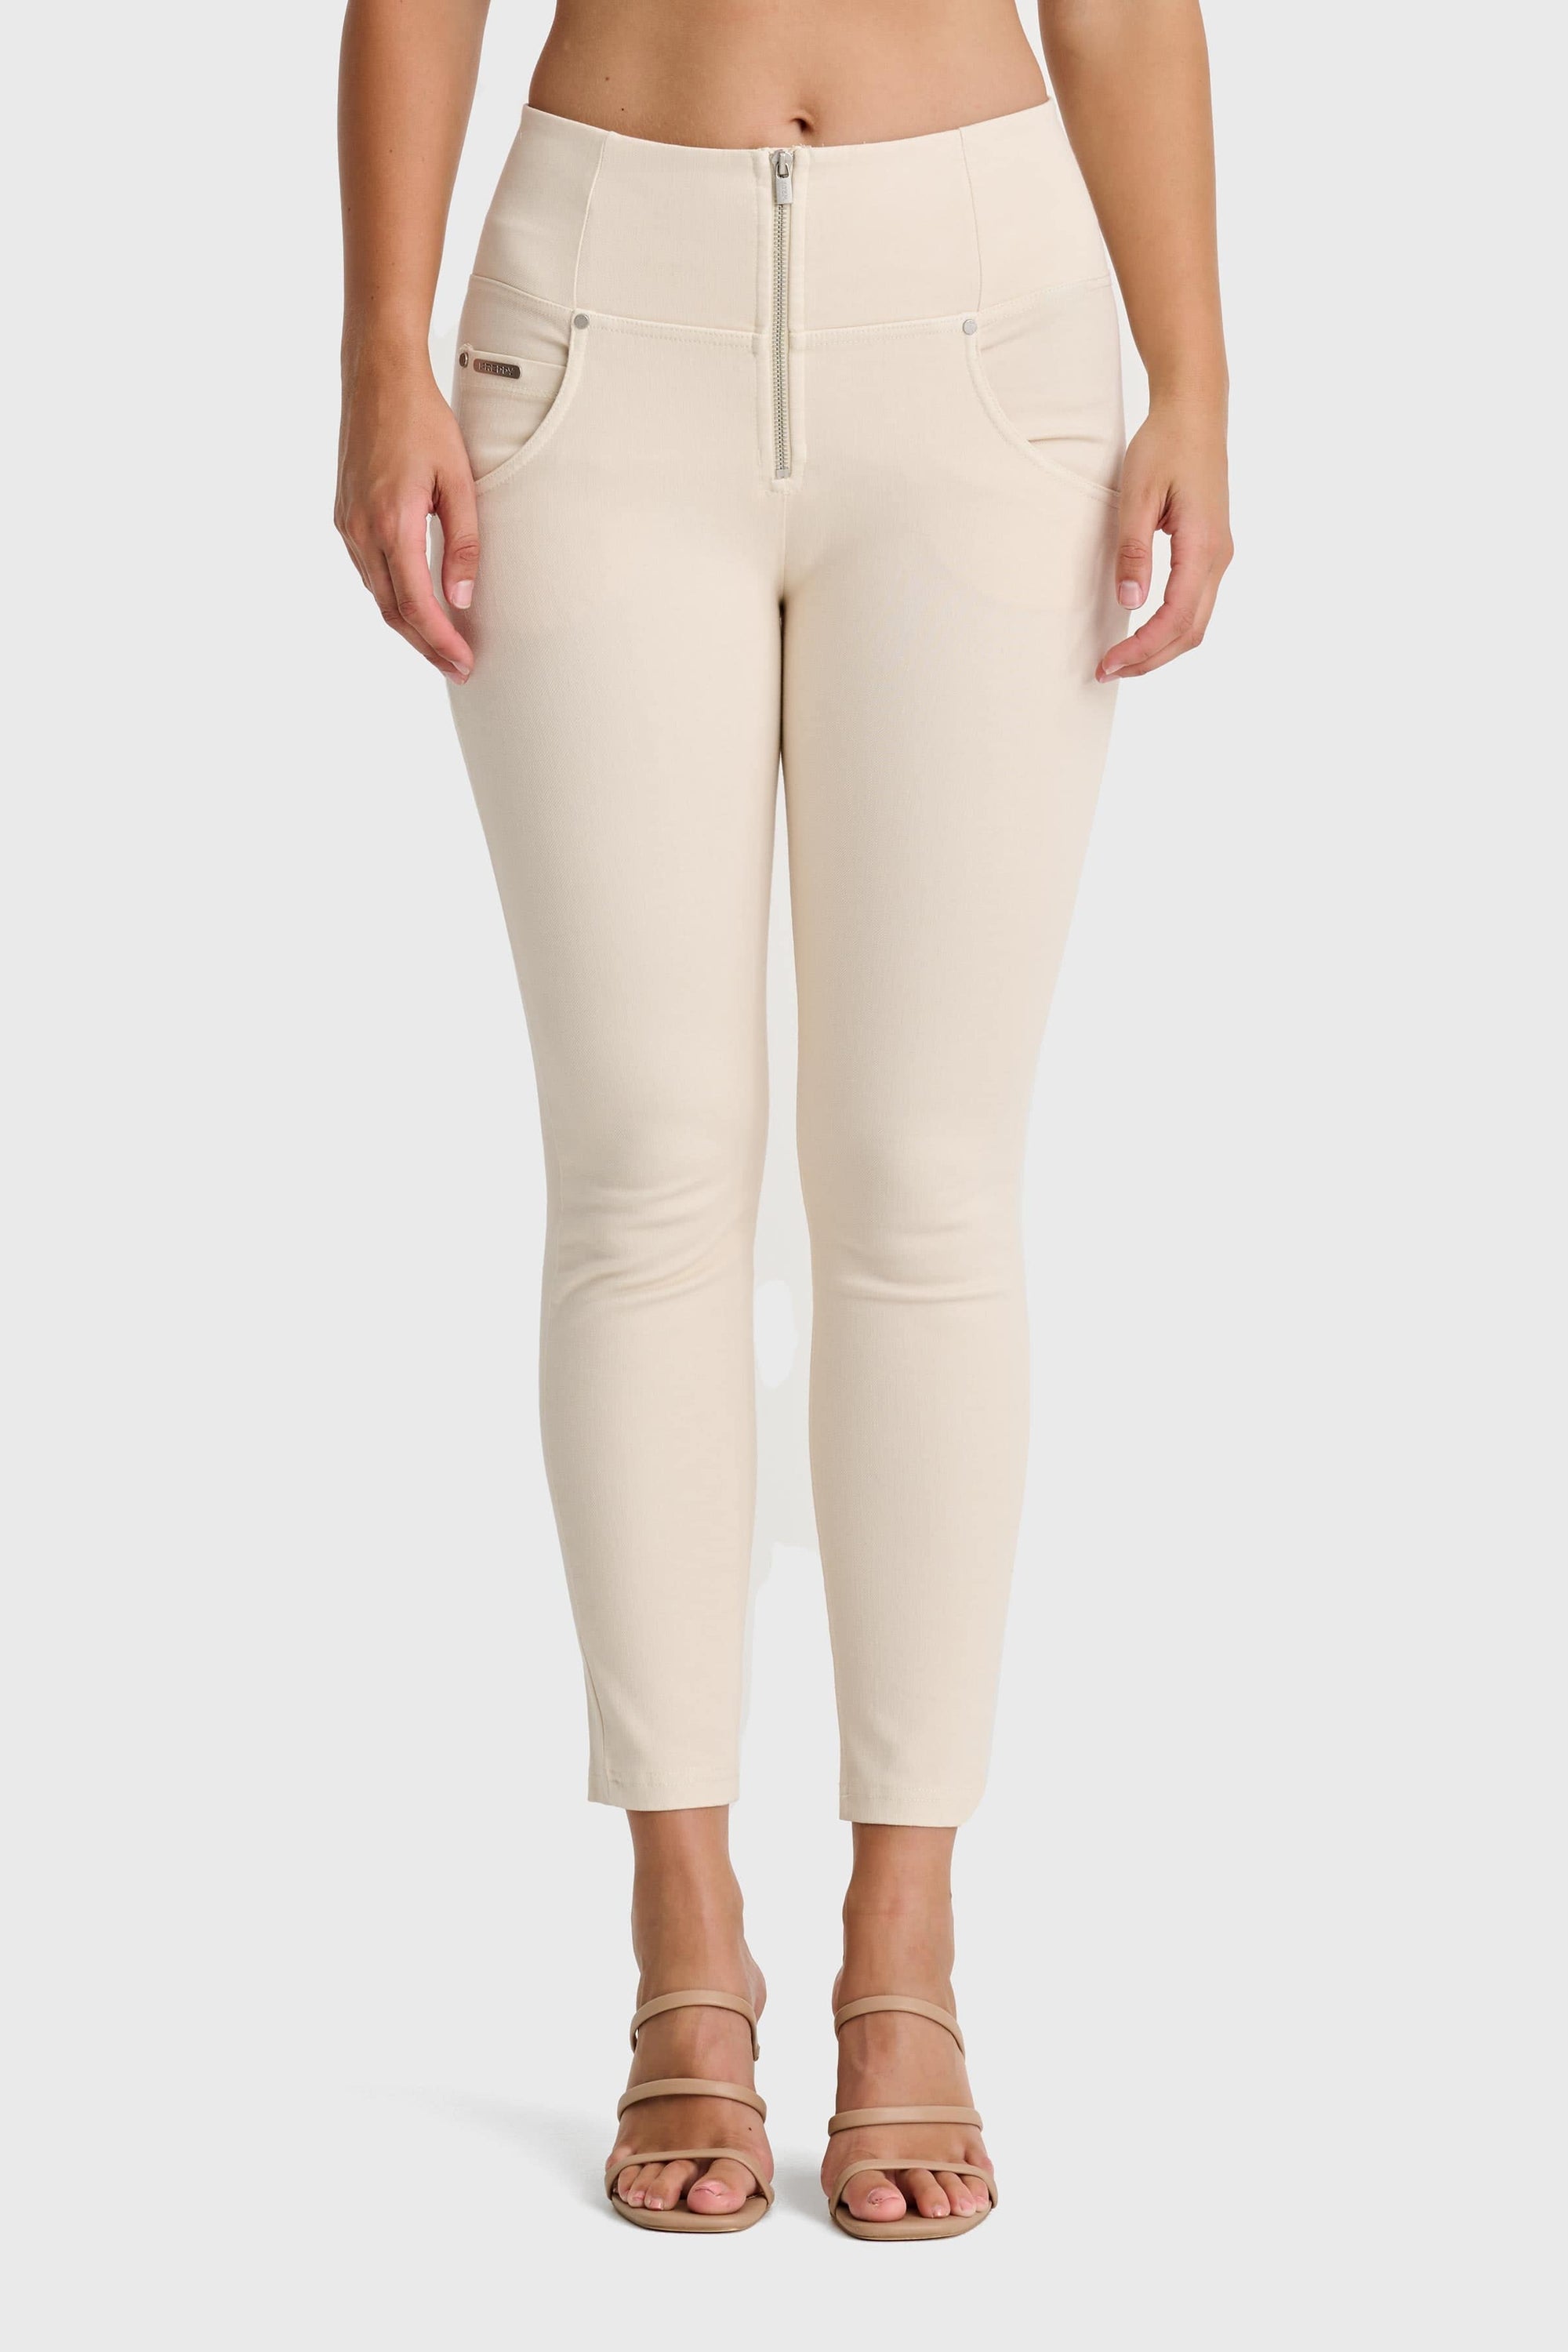 WR.UP® Snug Jeans - High Waisted - 7/8 Length - Ivory 7